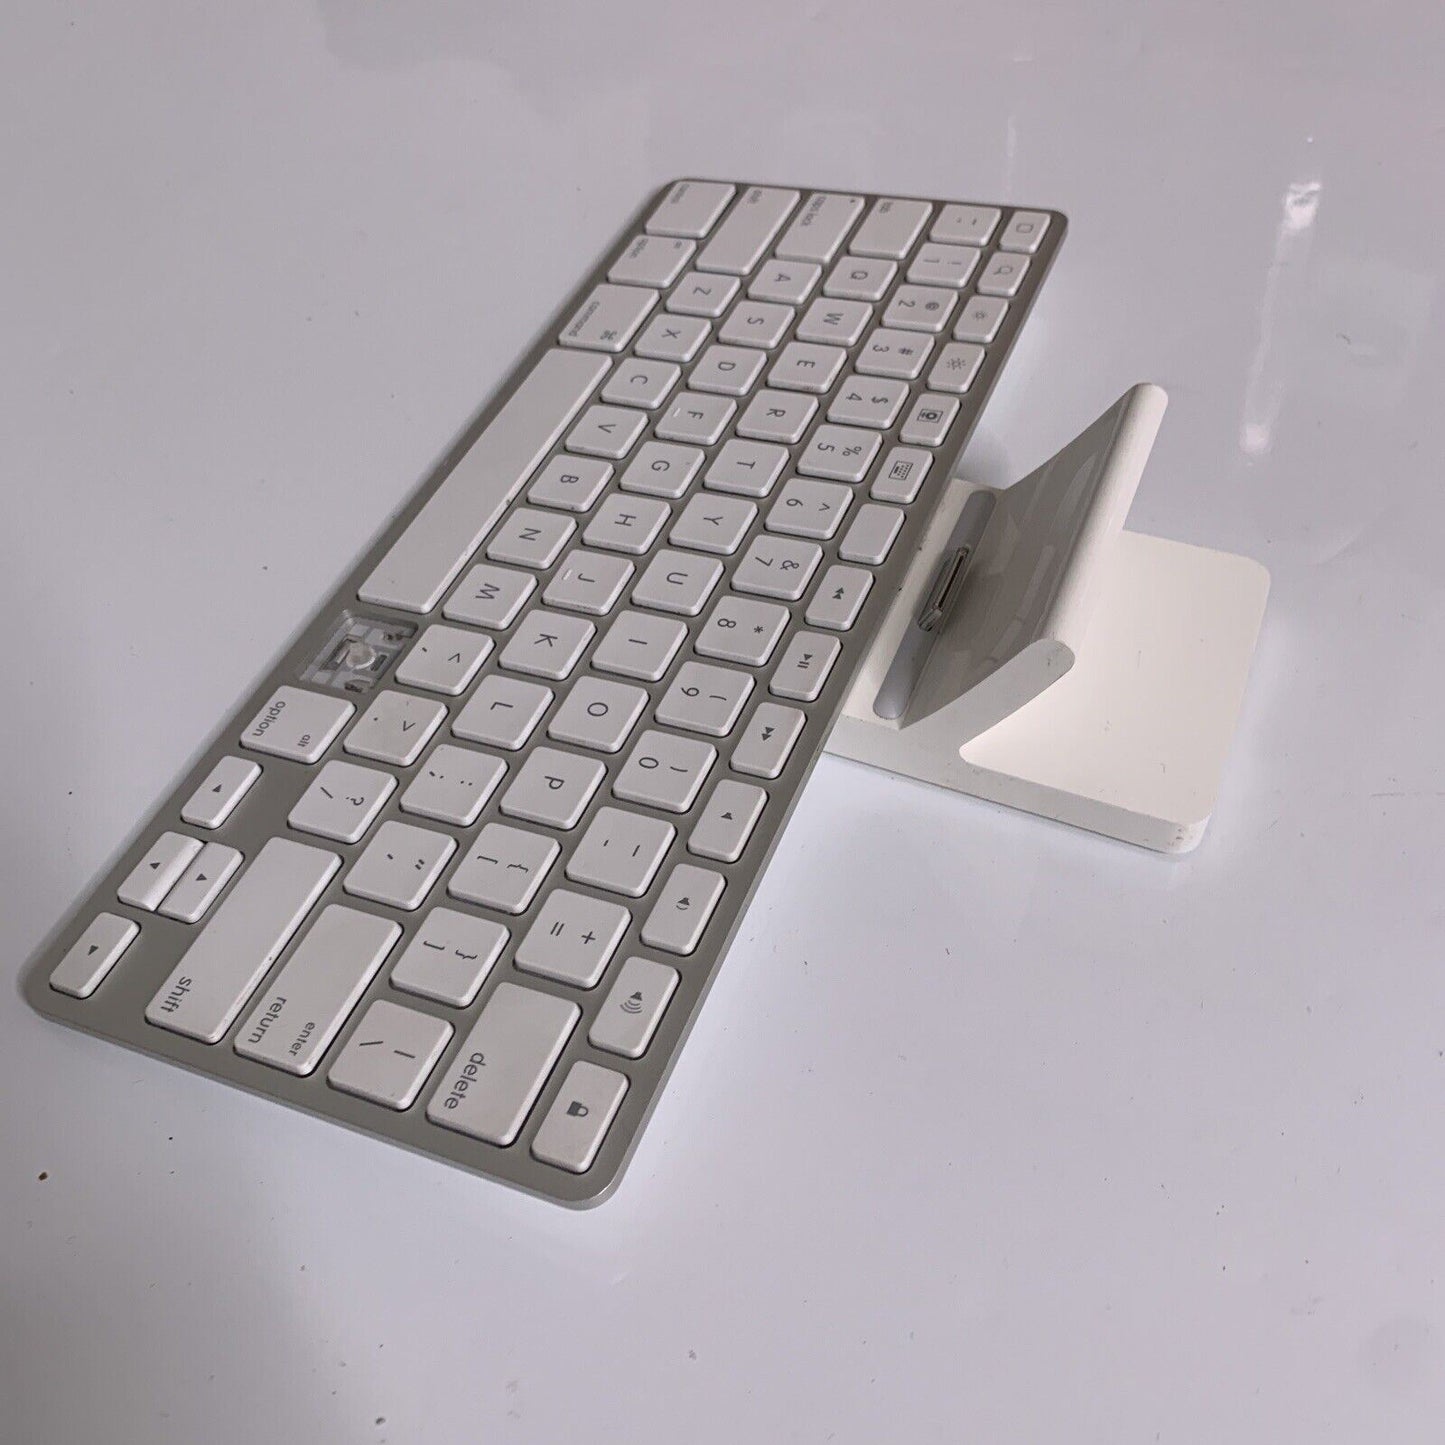 Apple iPad Keyboard Dock A1359 30-pin Connector